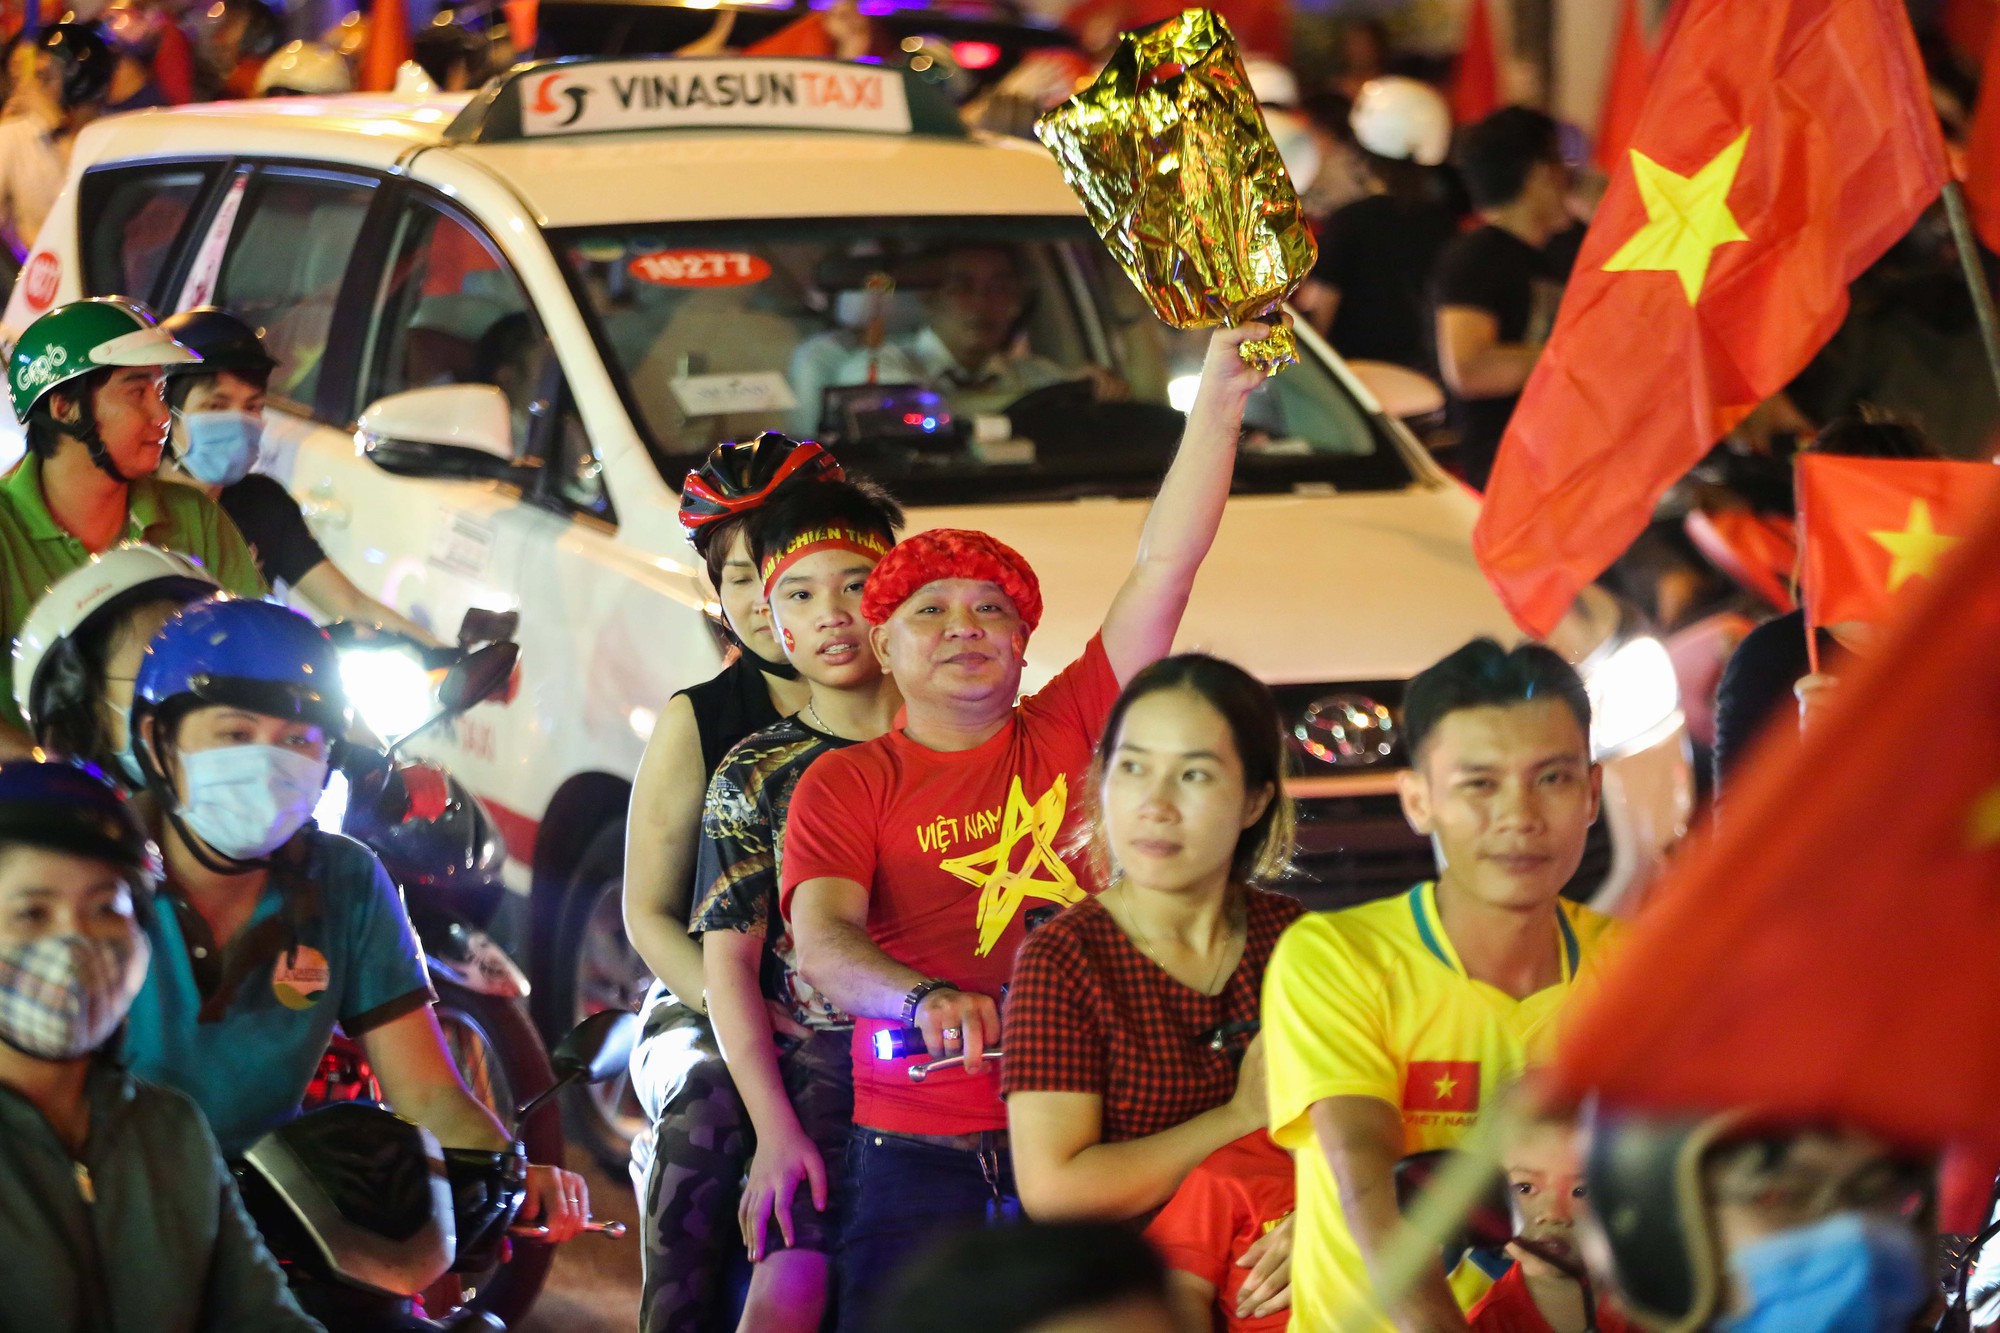 Việt Nam vừa đăng quang chức vô địch AFF Cup một cách thuyết phục và đầy xúc động. Bàn thắng duy nhất của đội tuyển quốc gia đã mang về chiến thắng lịch sử sau nhiều năm chờ đợi. Hãy cùng xem lại khoảnh khắc người hâm mộ tràn đầy niềm vui trong lễ ăn mừng thành công này.